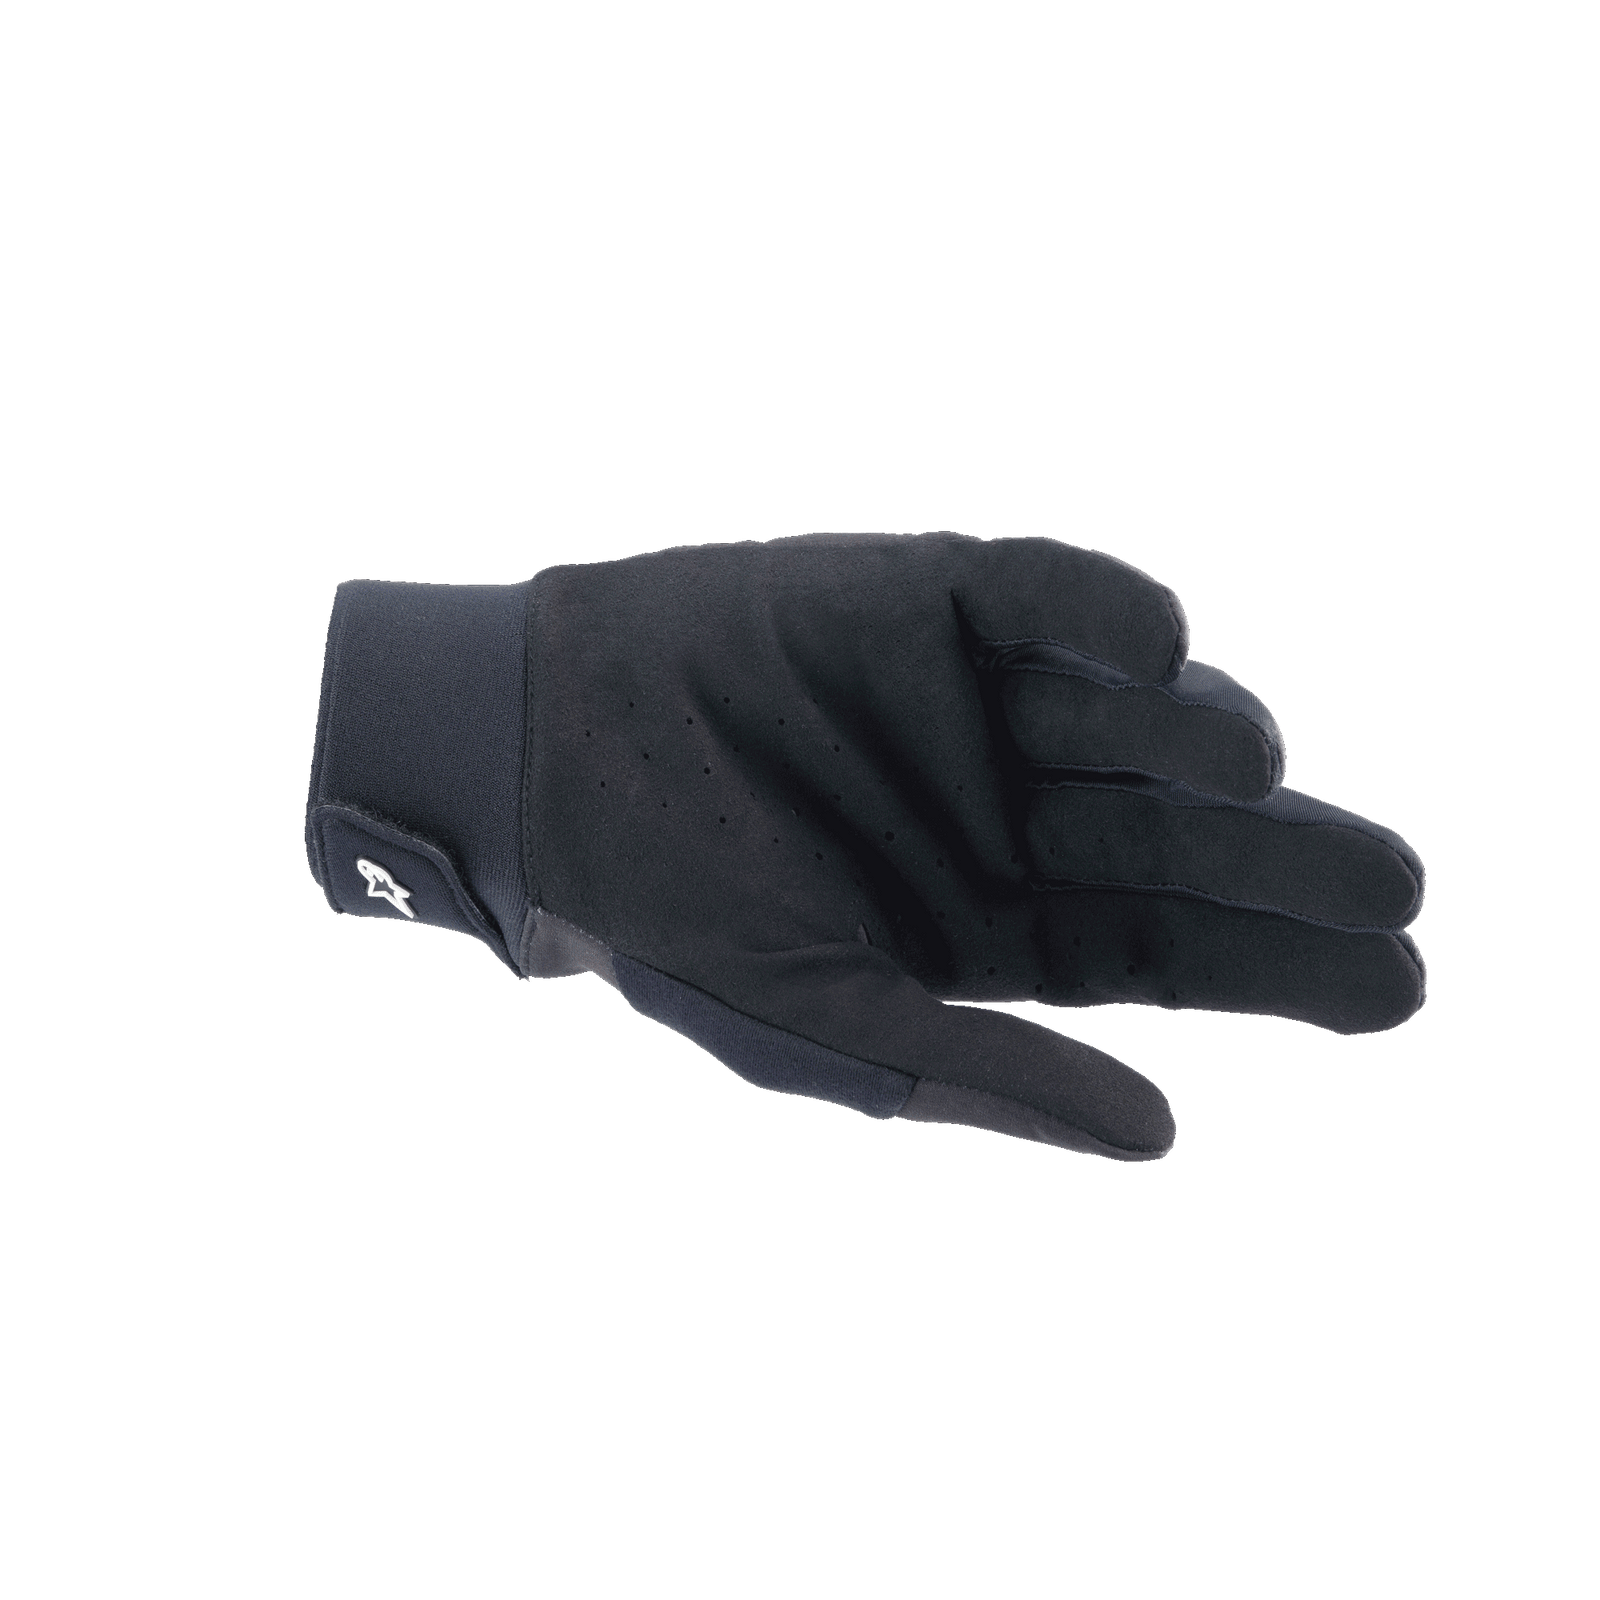 A-Supra Shield Handschuhe